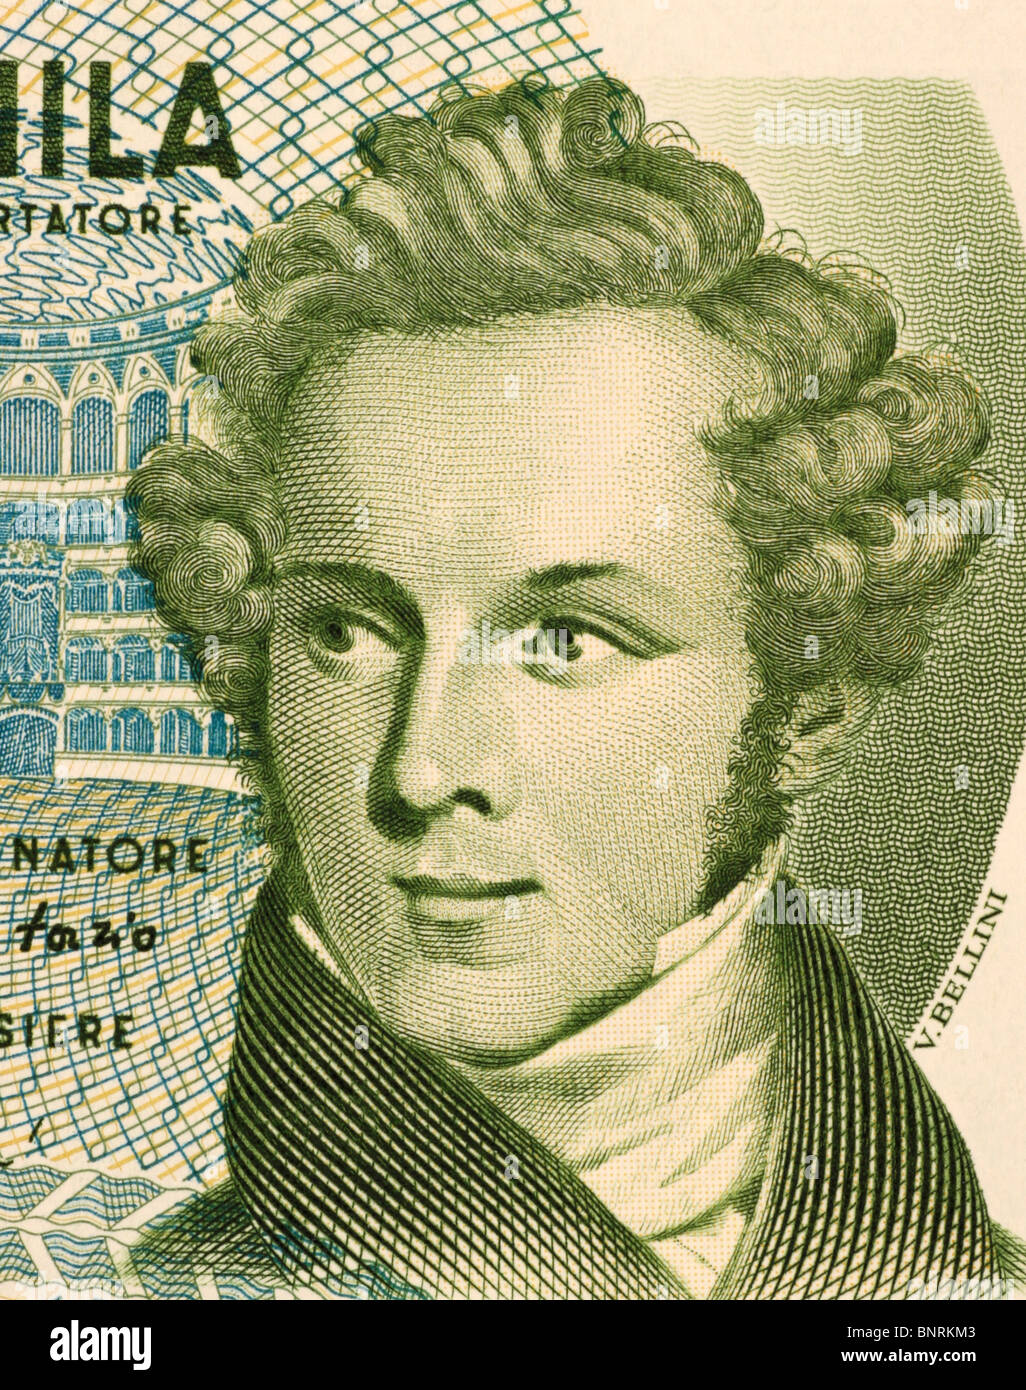 Vincenzo Bellini (1801-1835) su 5000 LIRE 1985 banconota dall'Italia. Opera italiana compositore. Foto Stock